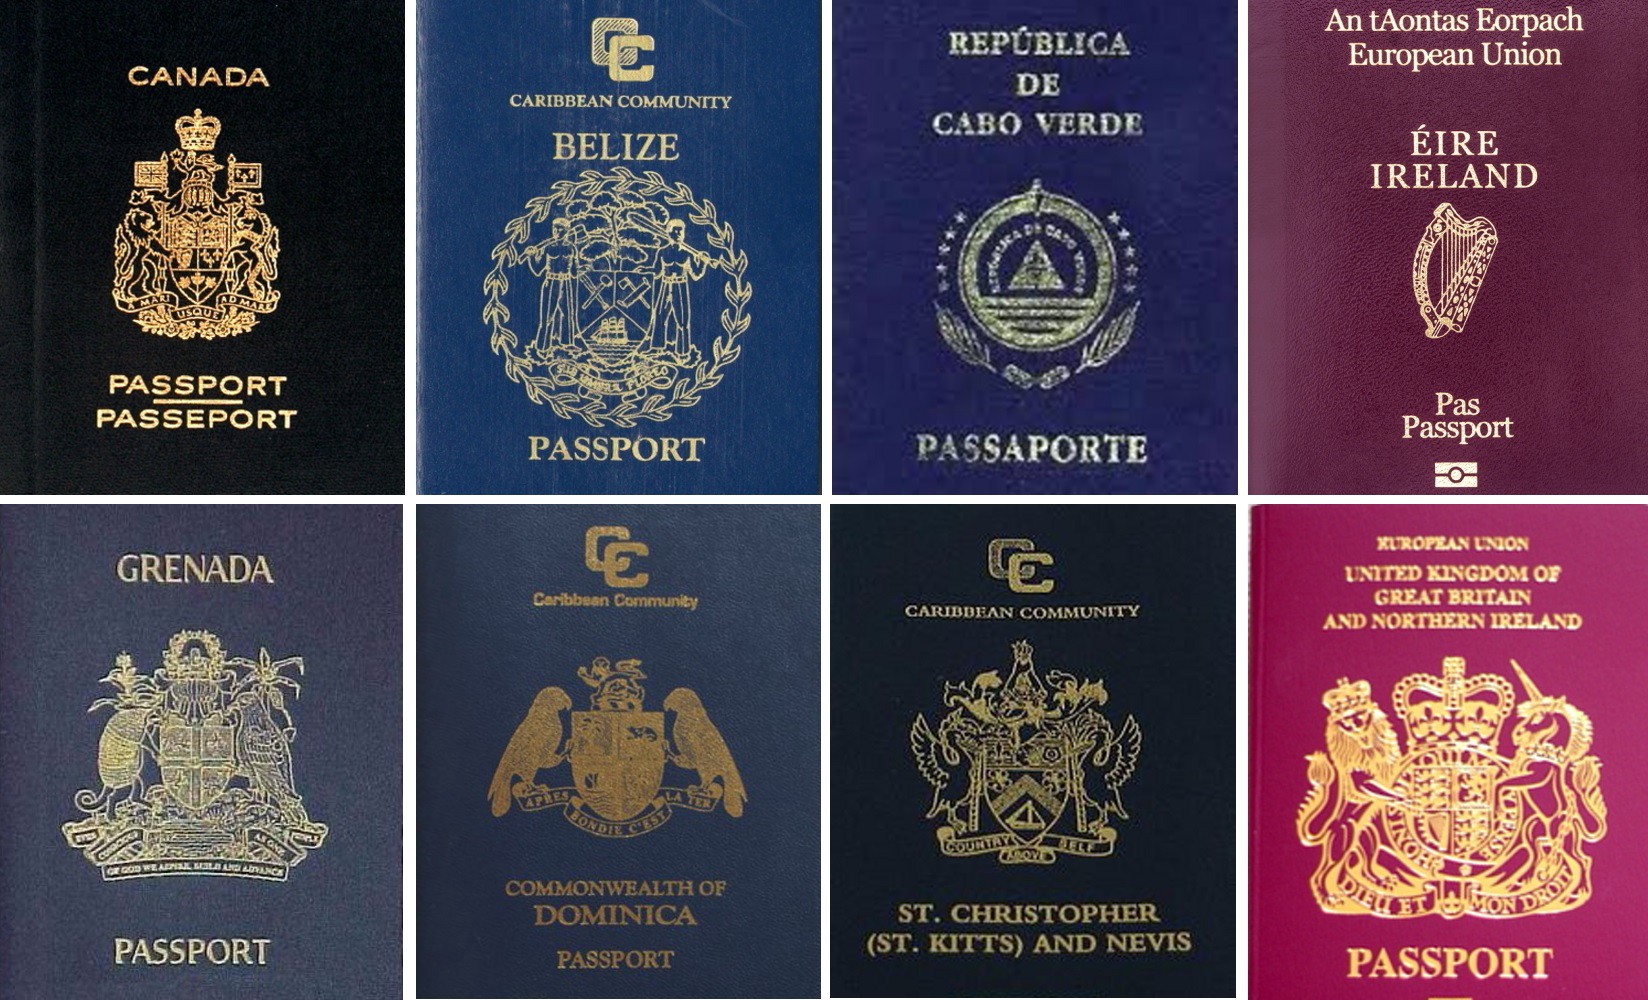 Обложки паспортов разных стран